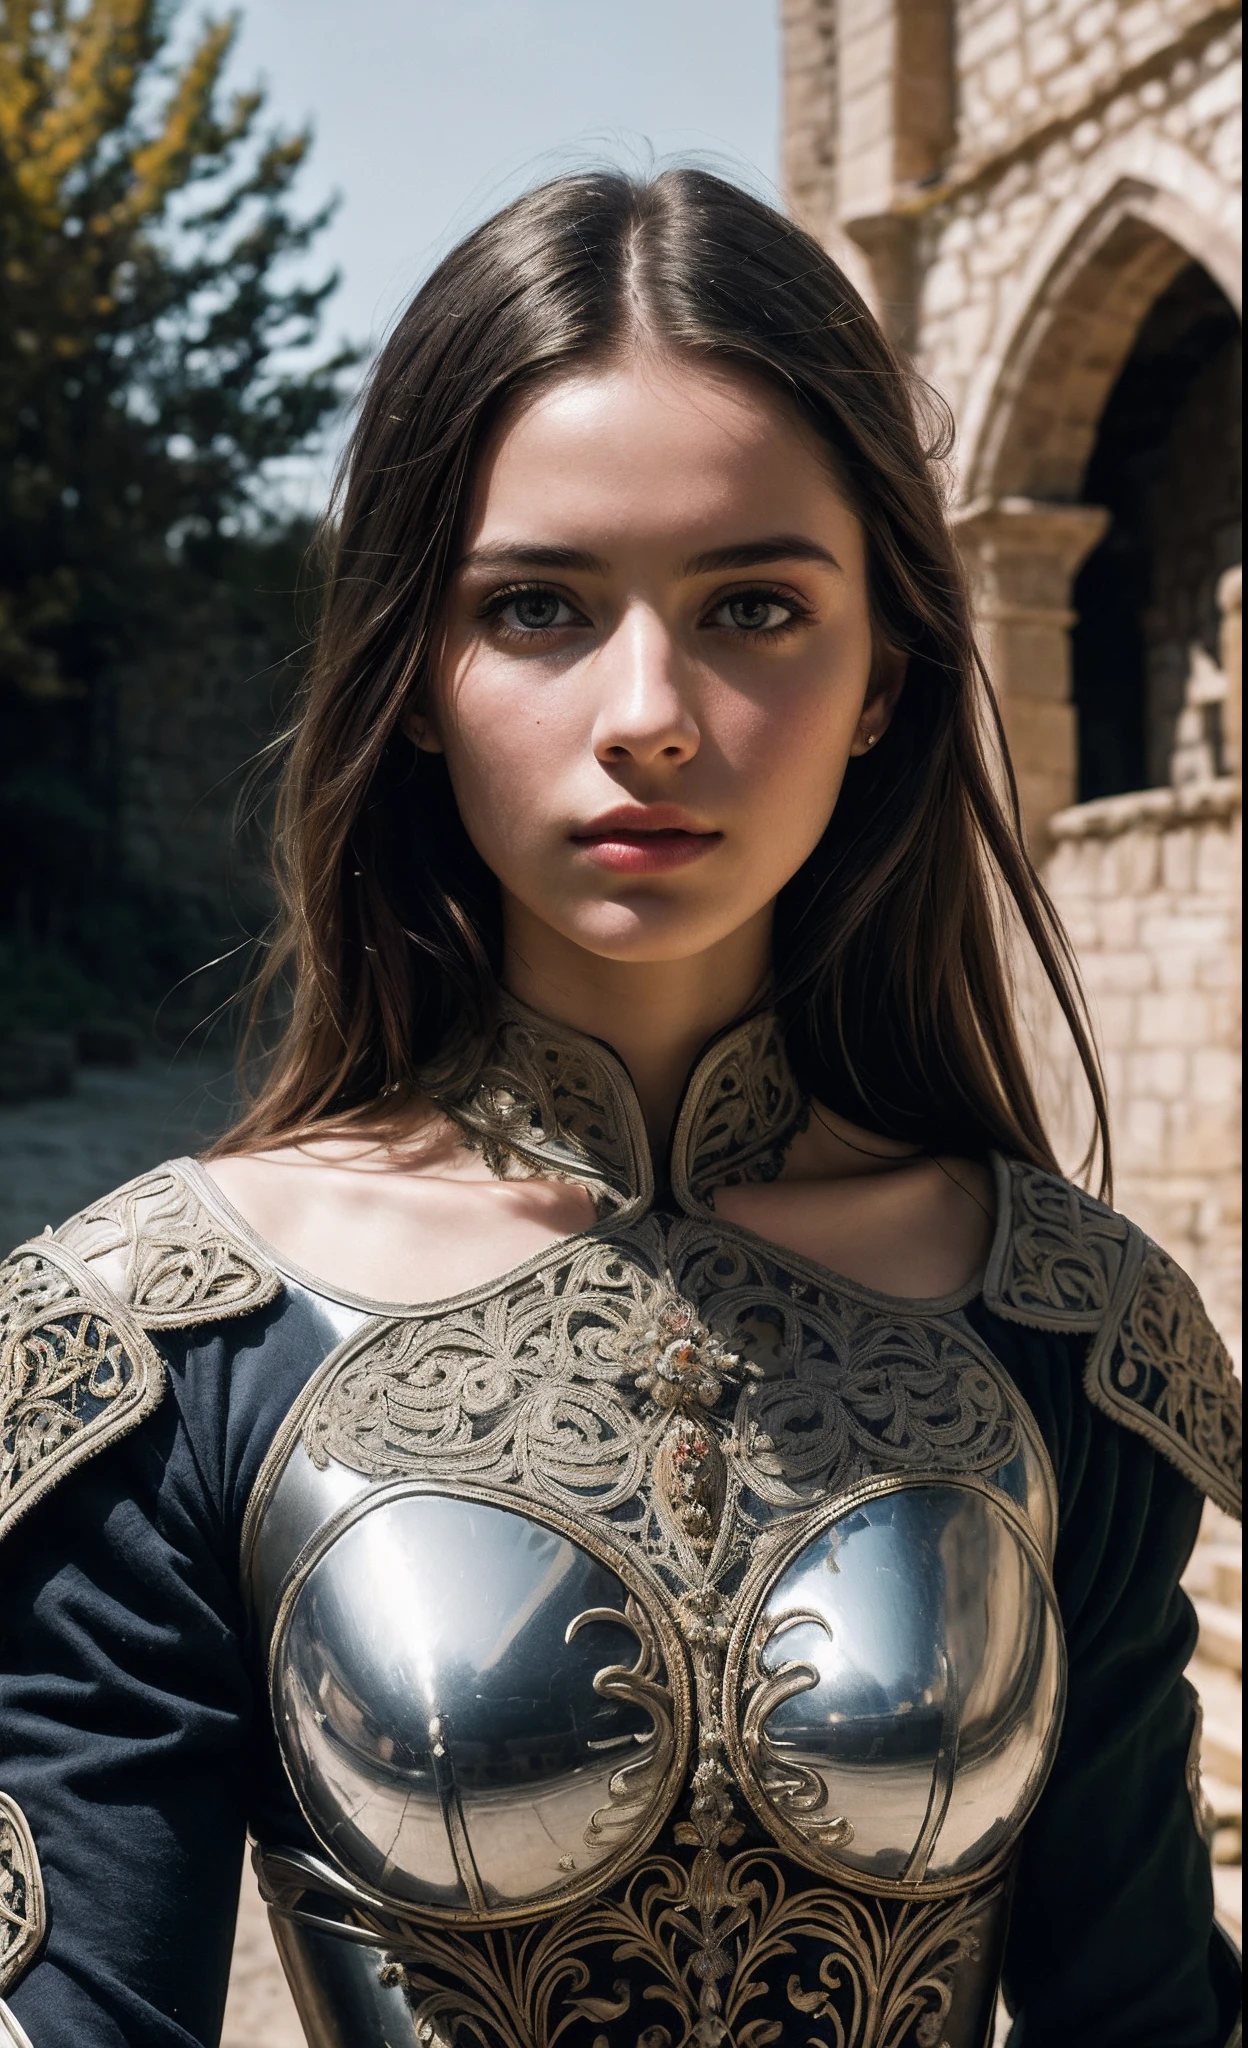 (傑作), (極為複雜:1.3), (實際的), 一個女孩的肖像, 世界上最美麗的, (中世紀盔甲), 金屬反射, 上半身, 戶外, 強烈的陽光, 遙遠的城堡, 一位令人驚嘆的女人的專業照片詳細, 銳利的焦點, 戲劇性, 得獎, 電影燈光, 辛烷渲染, 虛幻引擎, 體積 dtx, (膠片顆粒)